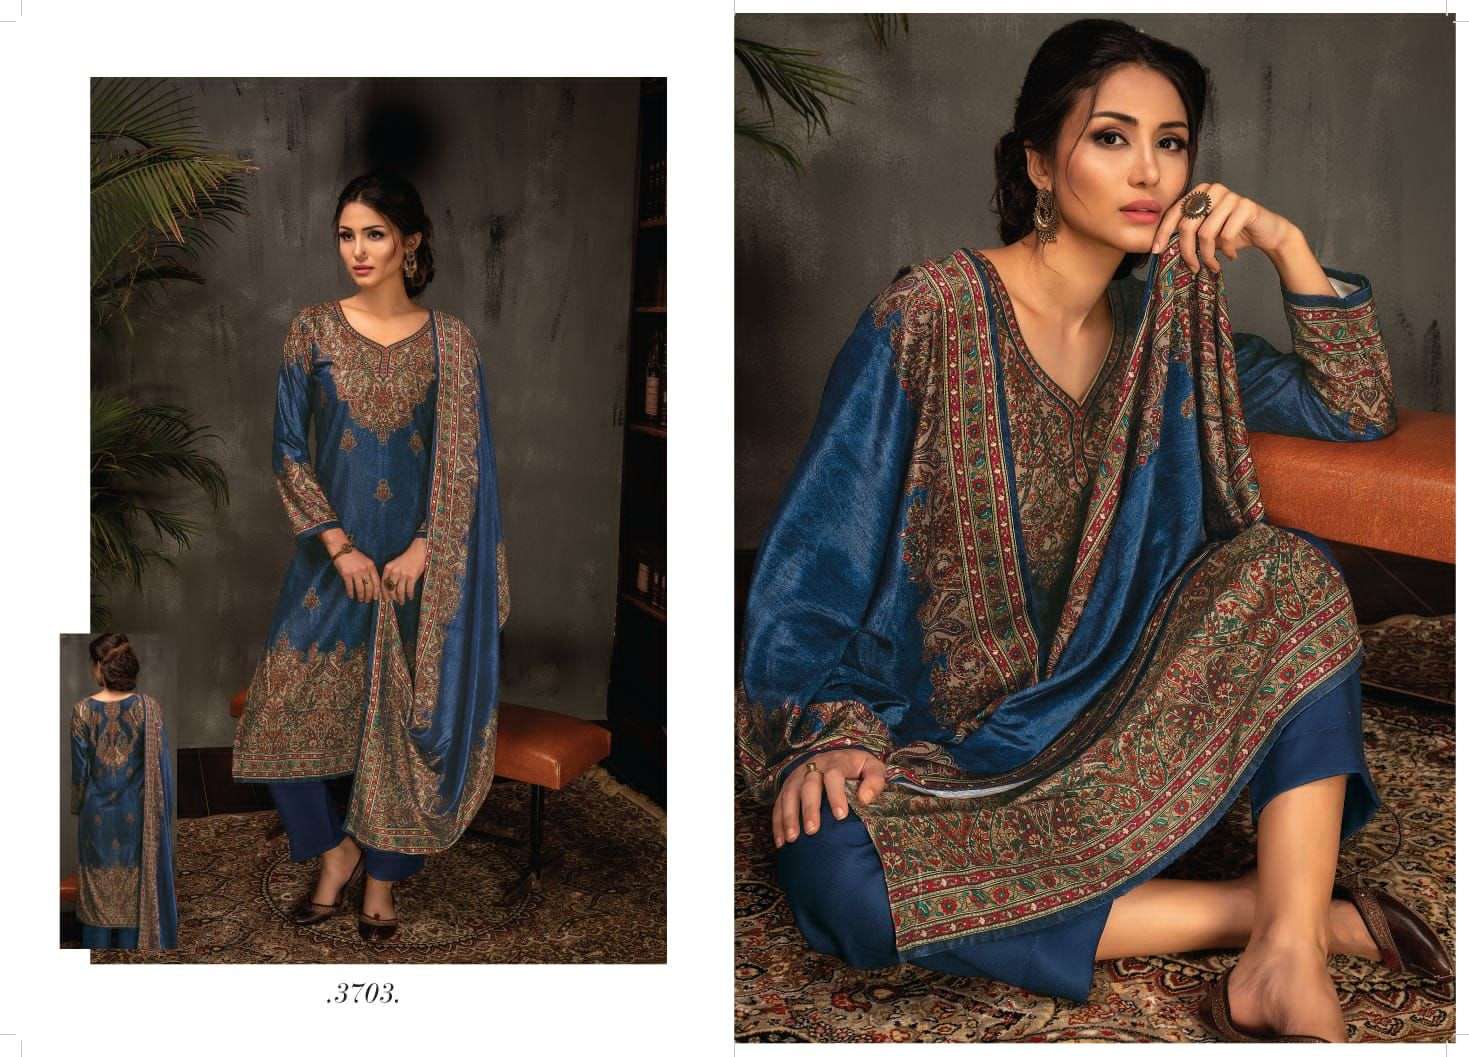 rivaa shaneel 3701-3707 series stylish look salwar kameez online in india